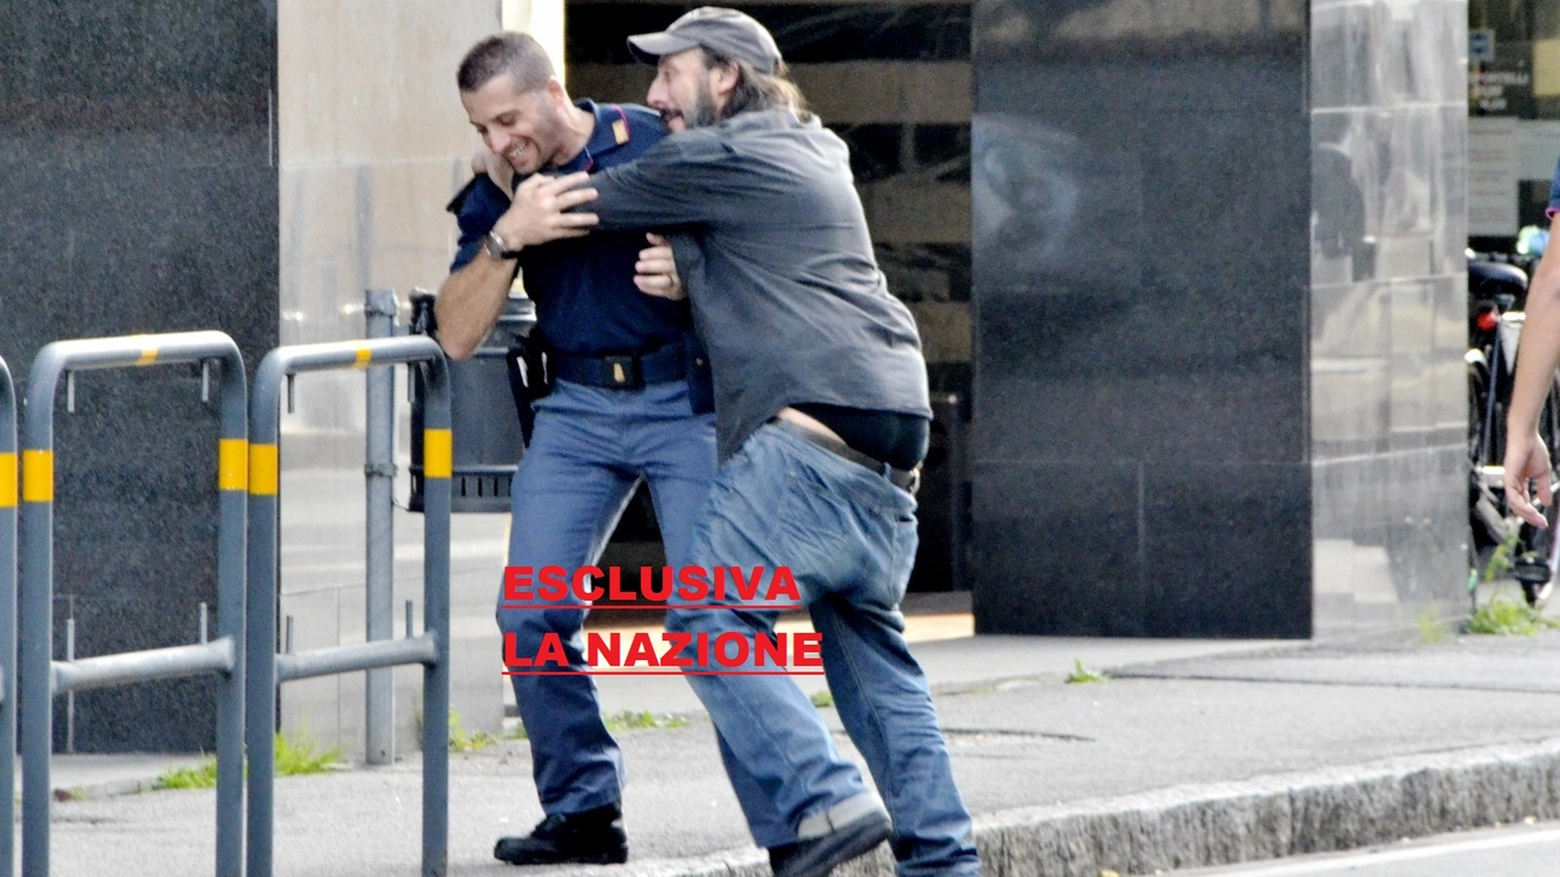 Ceccherini coglie di sorpresa il poliziotto intervenuto e lo abbraccia (foto Attalmi)